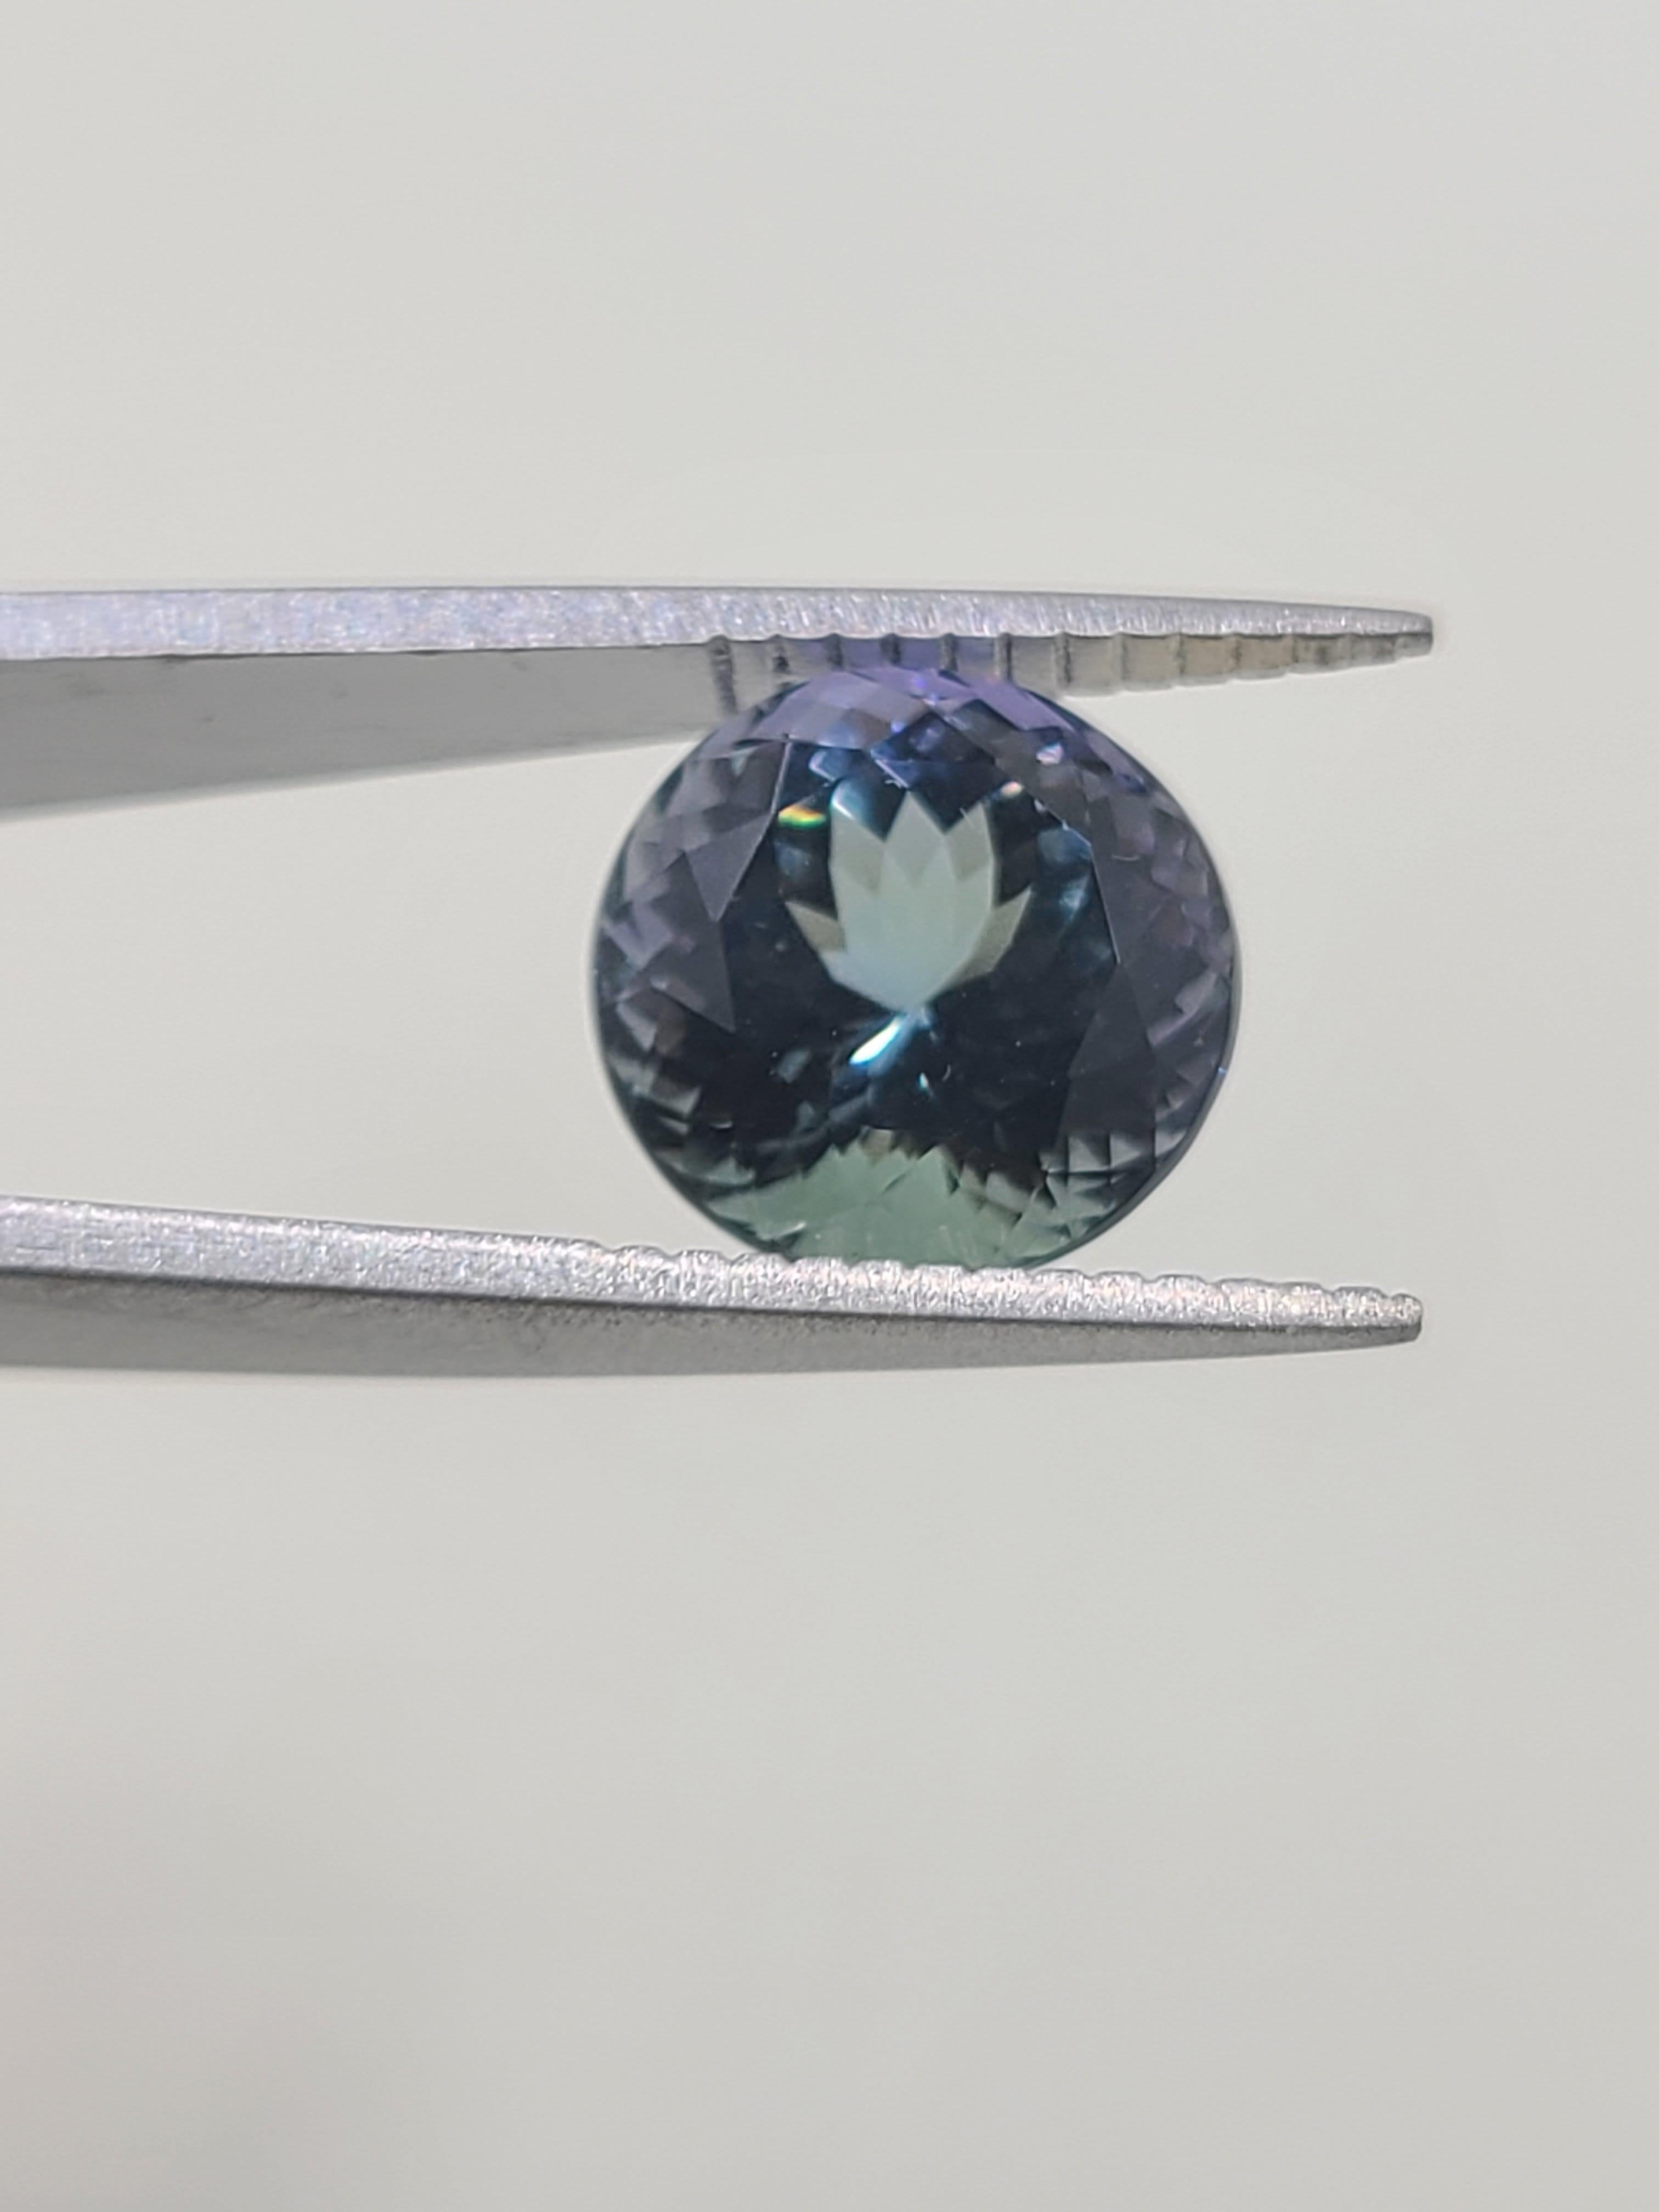 Cette tanzanite en vrac mesure 10 mm de diamètre et 7,20 mm de profondeur, avec une taille ronde à facettes, ce qui lui confère une bonne symétrie et lui permet d'afficher sa teinte à couper le souffle.

Cette magnifique tanzanite présente des